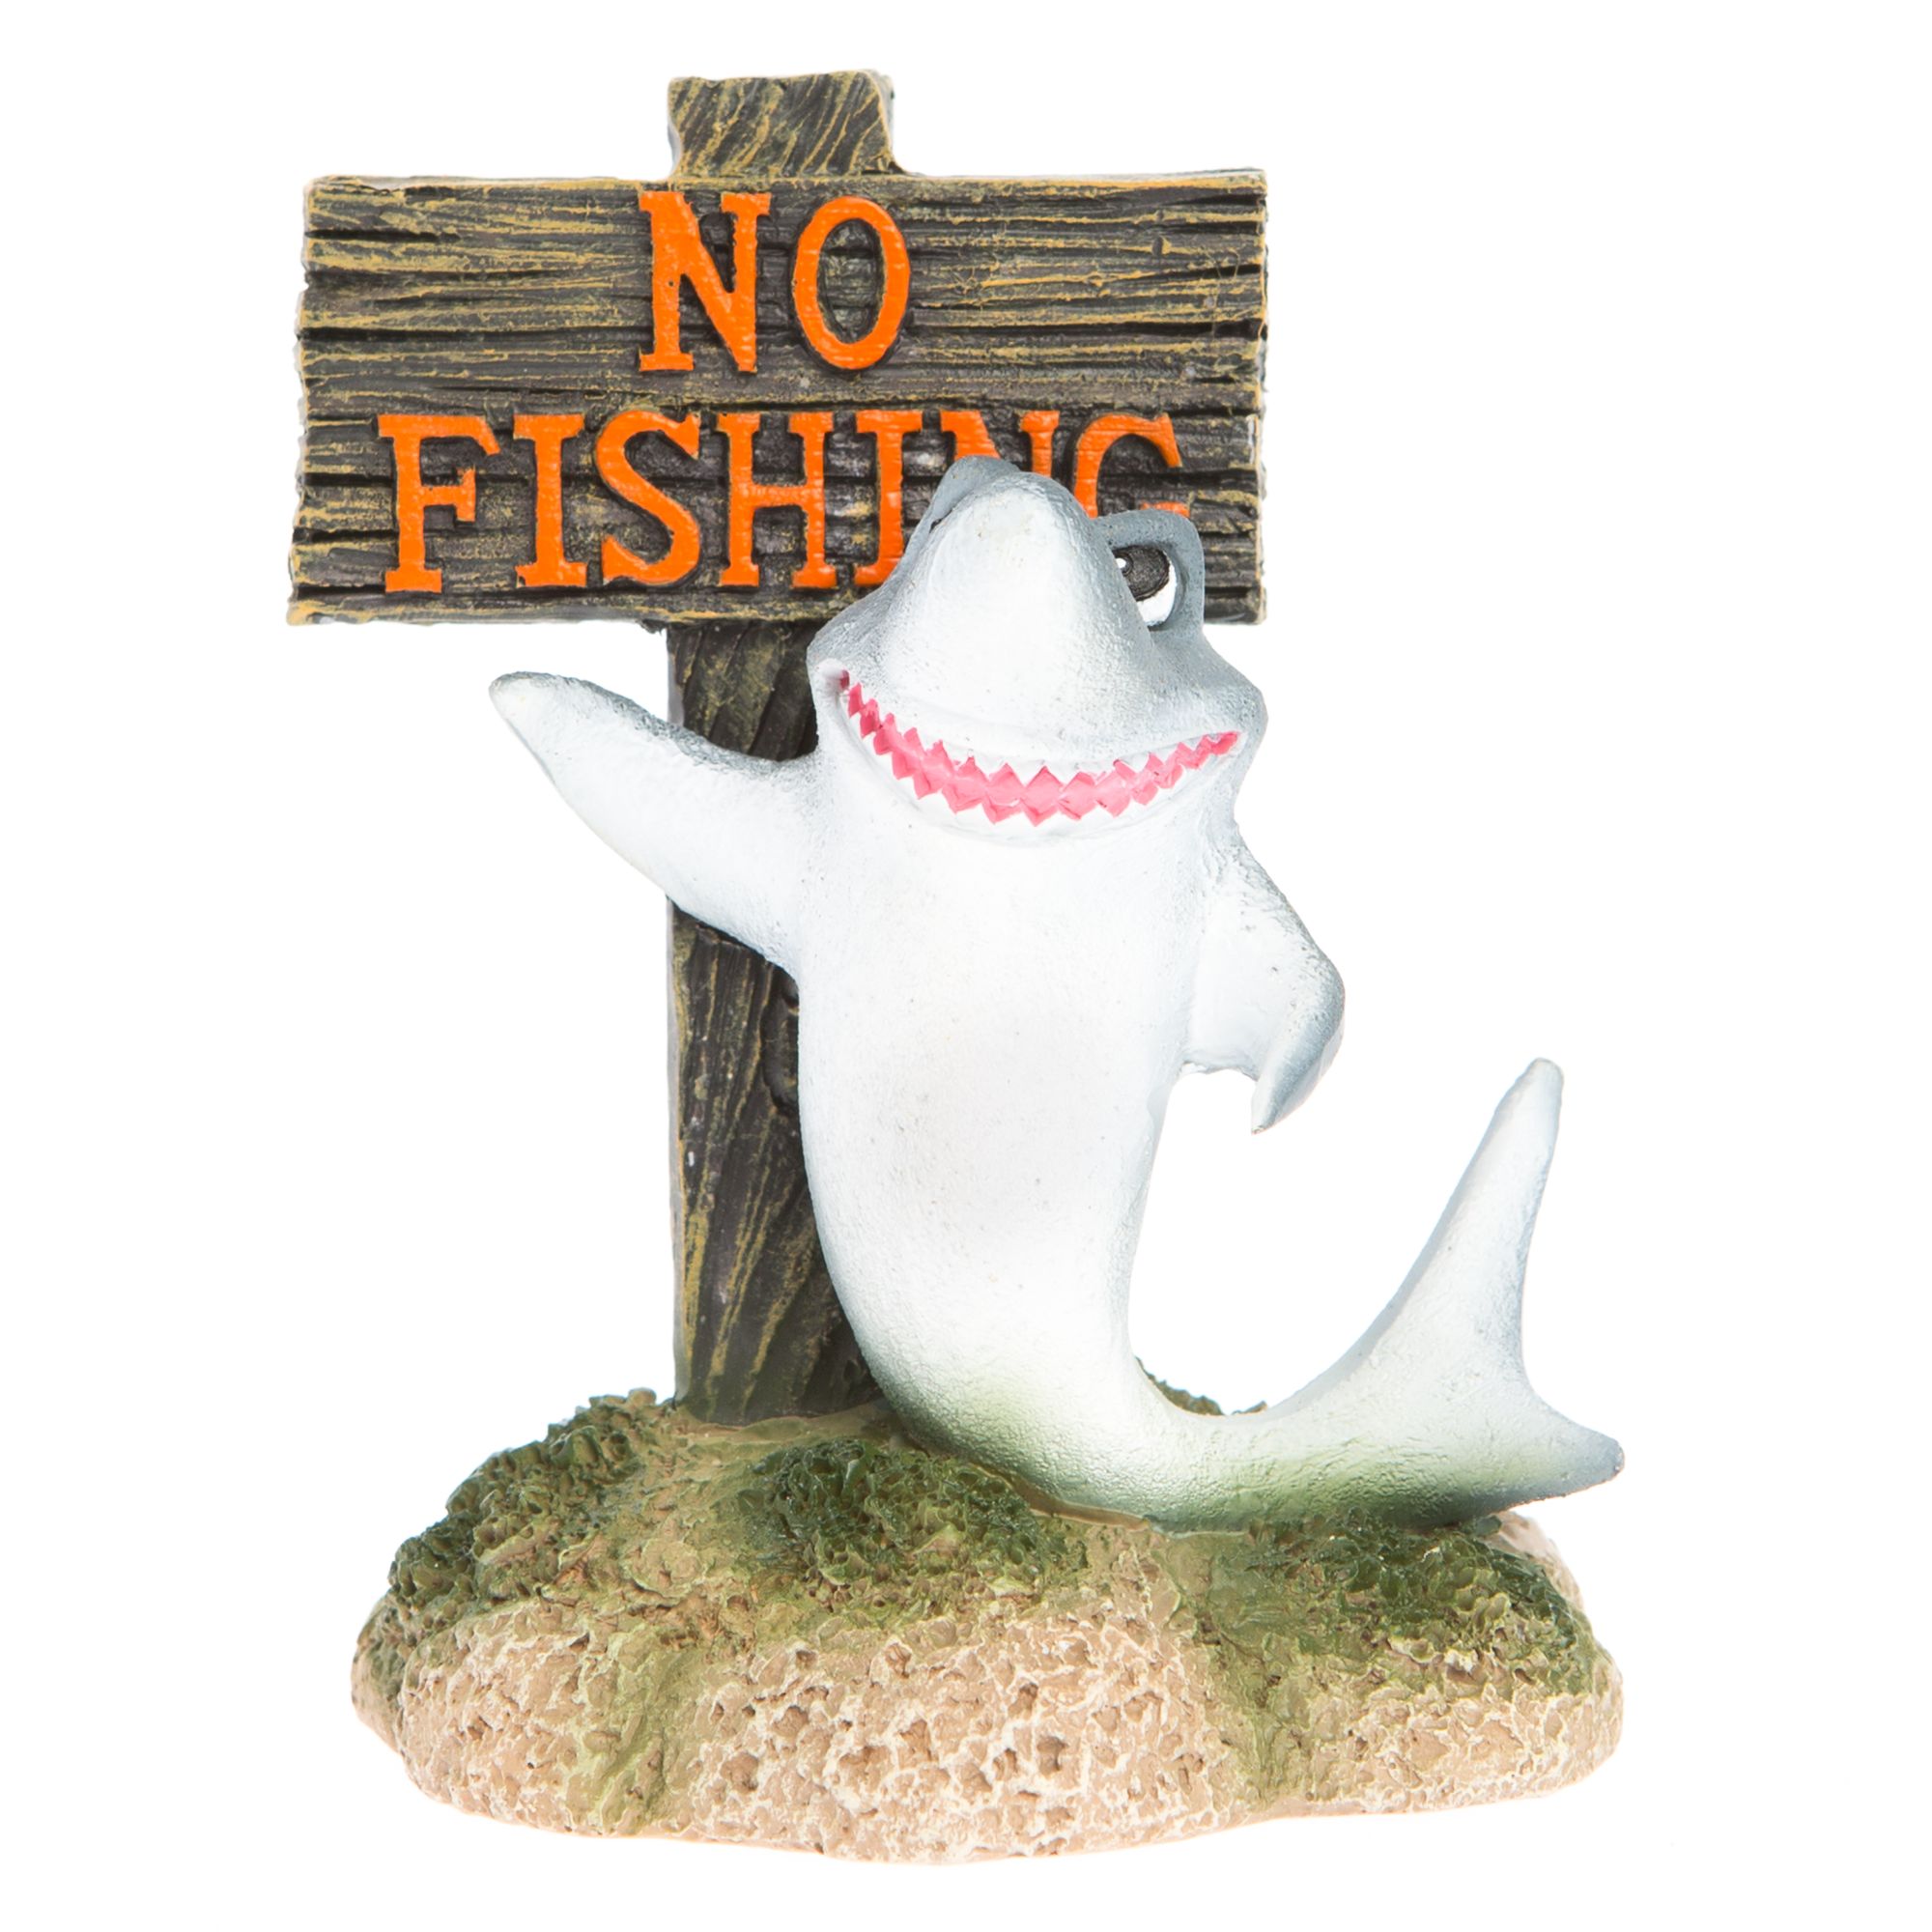 Top Fin No Fishing with Shark Aquarium Ornament Small (1 ct)